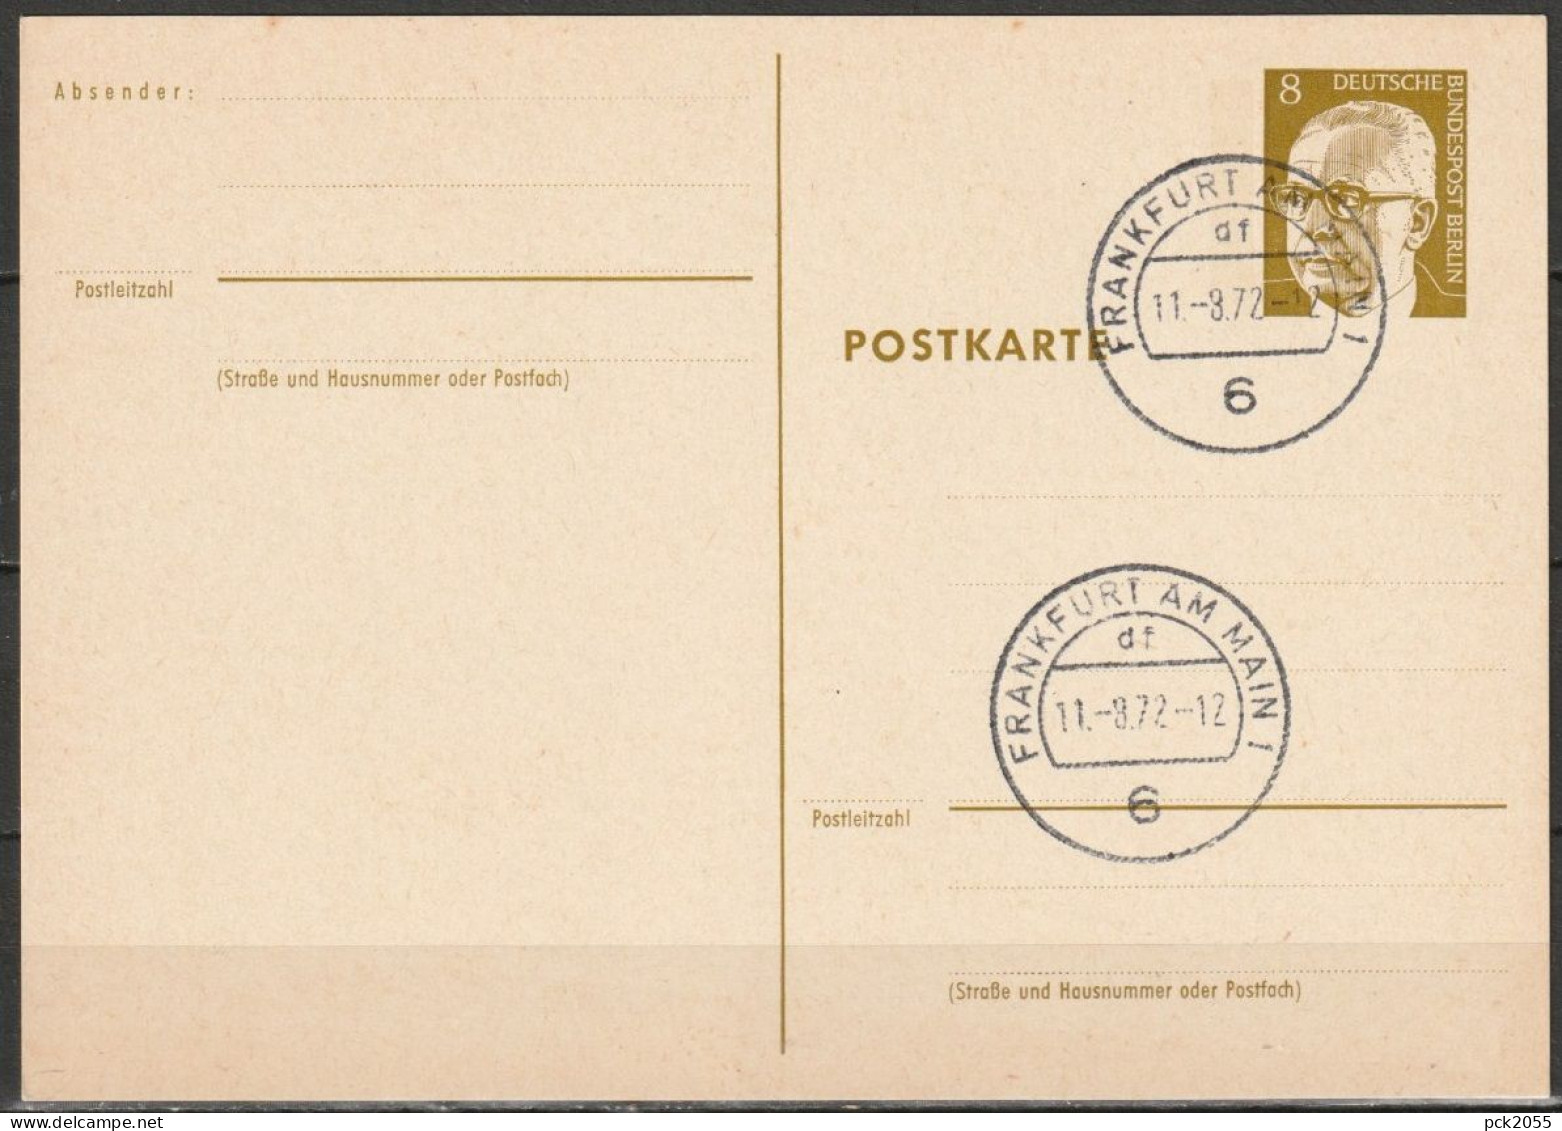 Berlin Ganzsache 1971/72 Mi.-Nr. P 80 Tagesstempel FRANKFURT 11.8.72  ( PK 392 ) - Postales - Usados